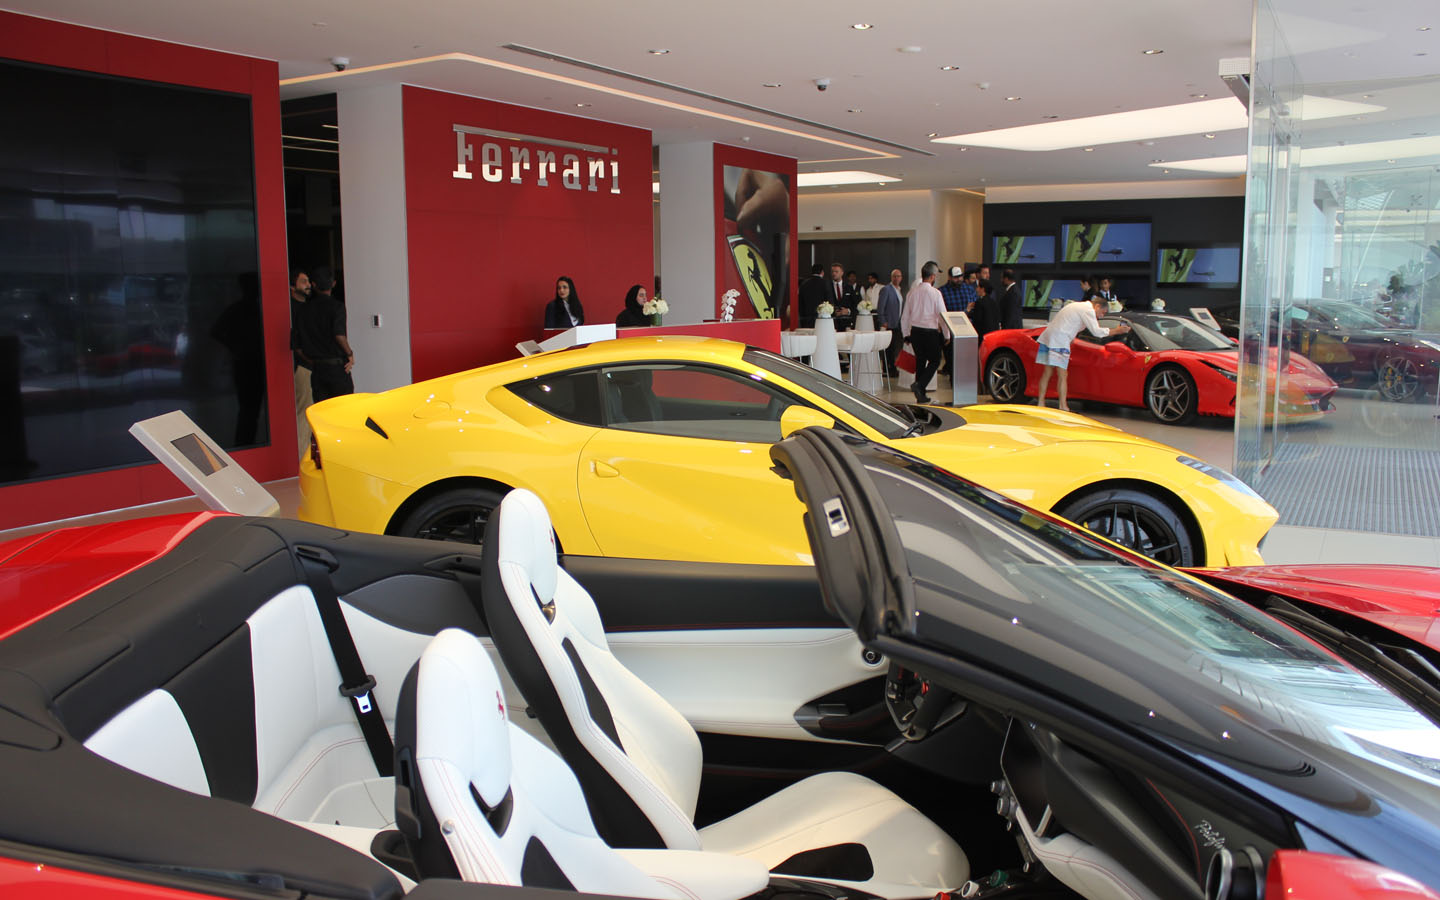 Ferrari showrooms in Dubai